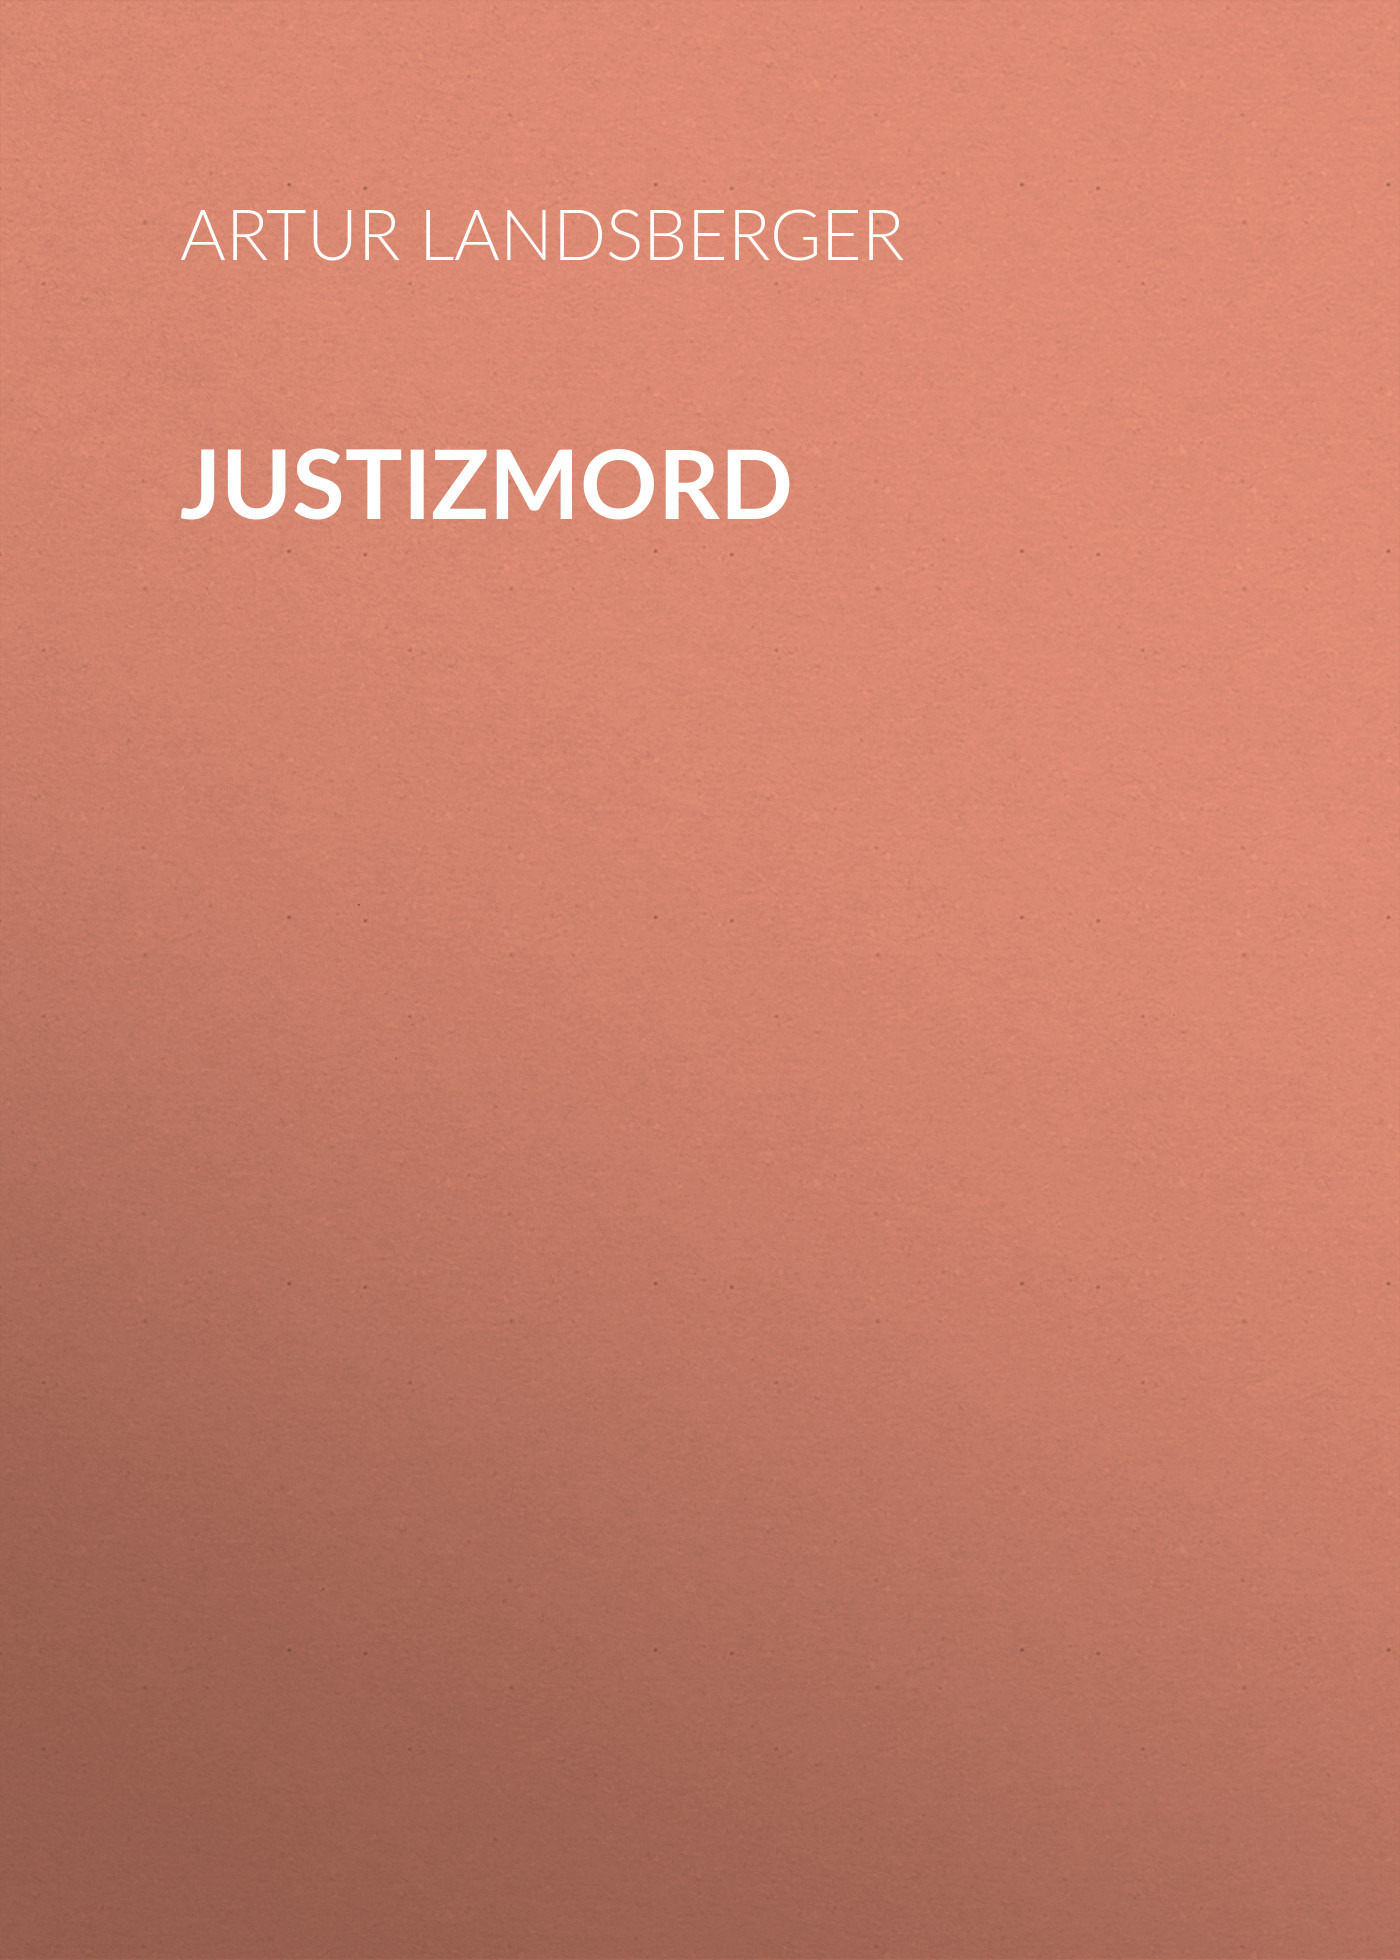 Книга Justizmord  из серии , созданная Artur Landsberger, может относится к жанру Зарубежная классика. Стоимость электронной книги Justizmord  с идентификатором 48632988 составляет 0 руб.